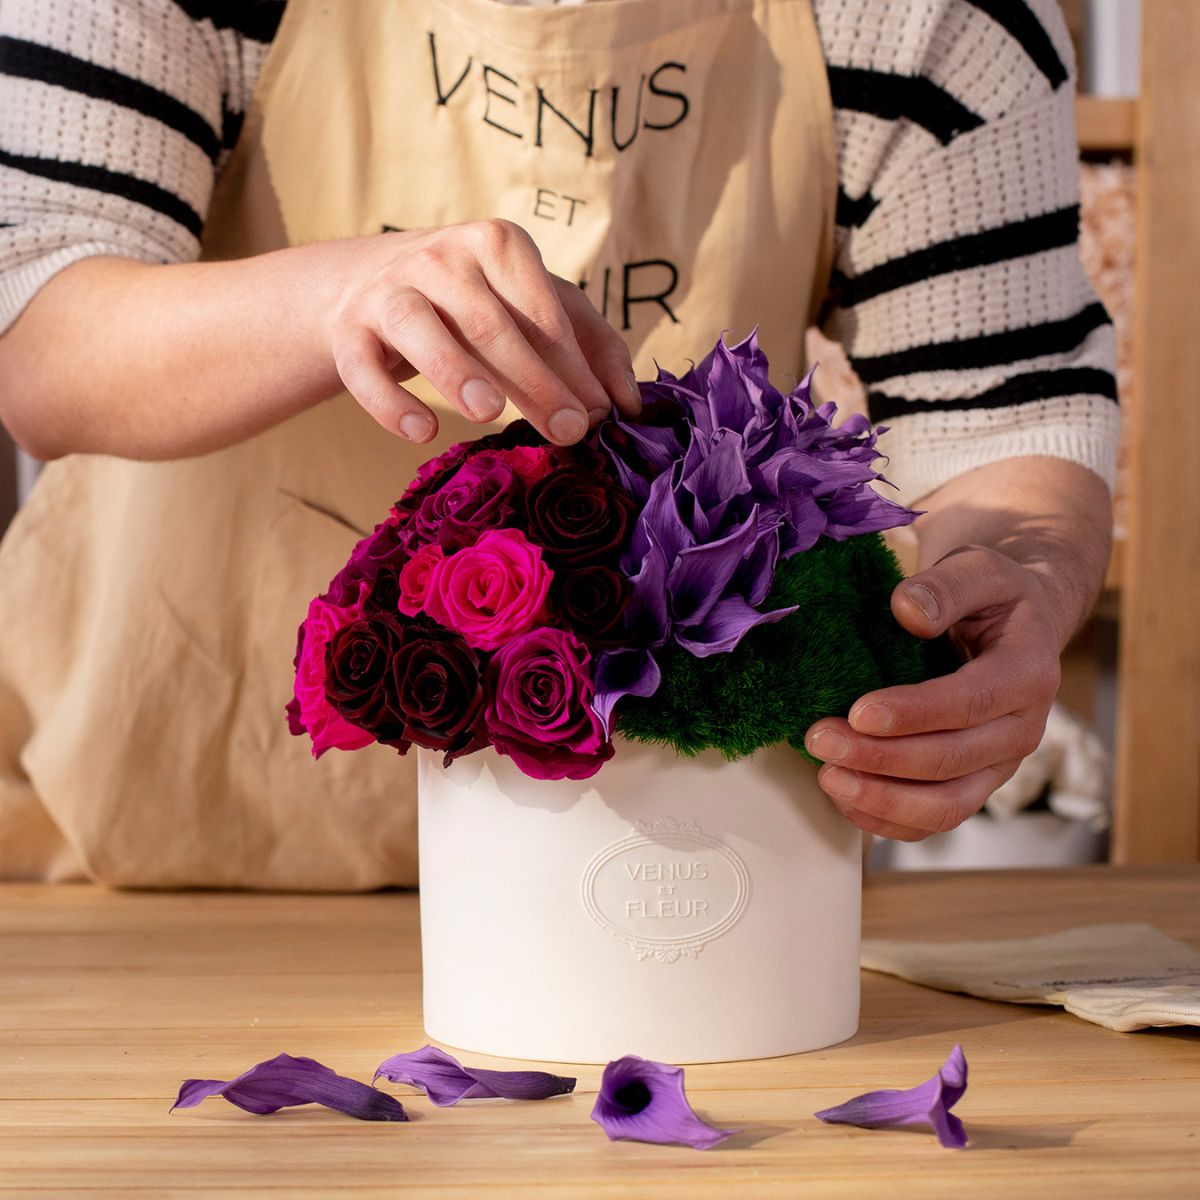 Hands arranging Purple Calla Lily Eternity Arrangement - Venus et Fleur